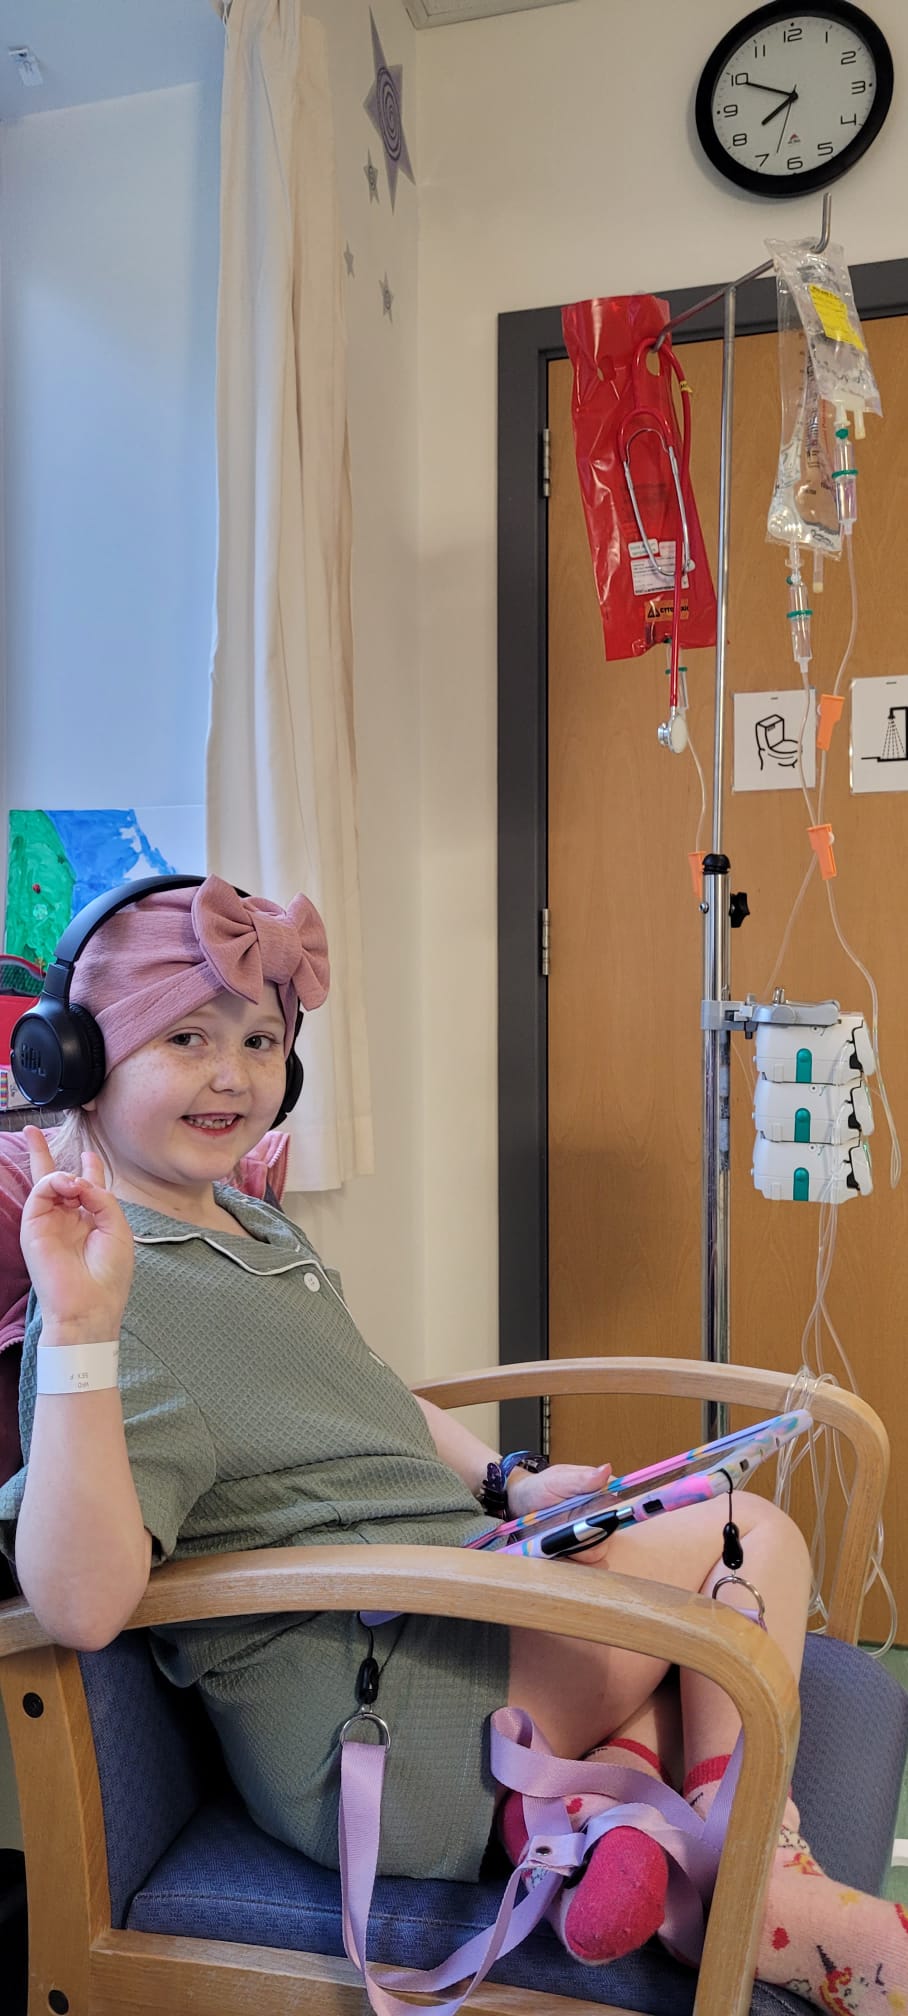 Aurora underwent gruelling chemotherapy while battling cancer